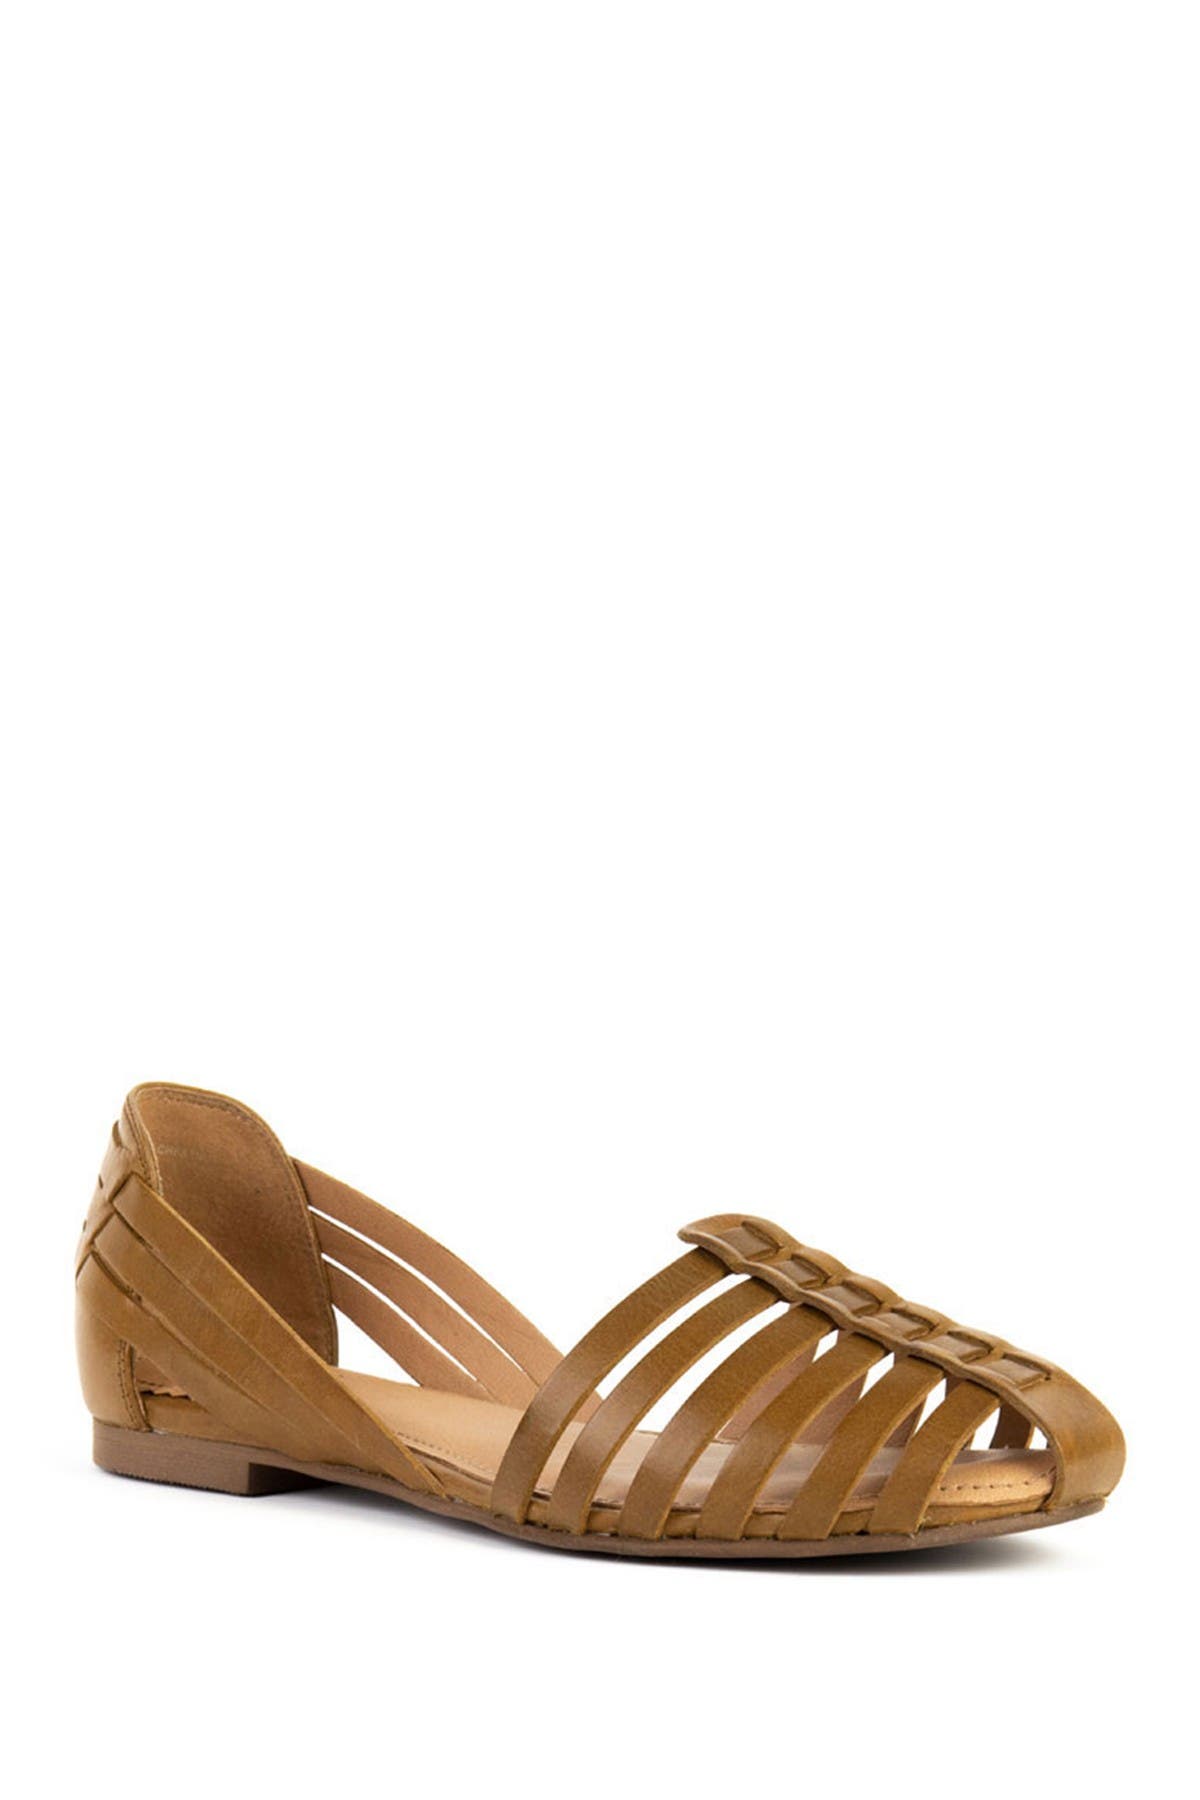 huarache sandals womens wide width